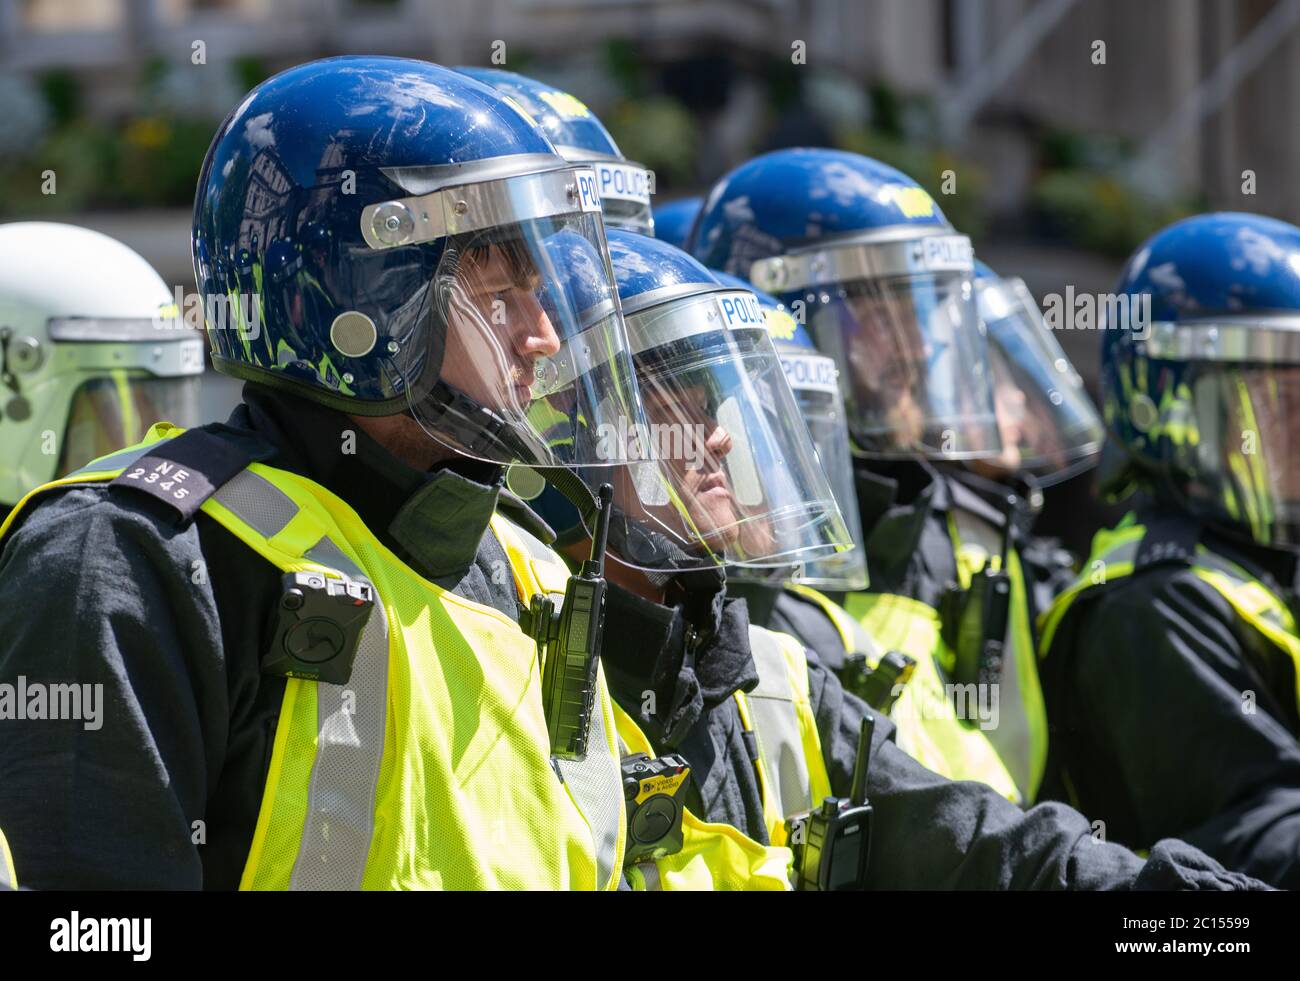 La policía antidisturbios en Whitehall tras las barreras, impidiendo que los partidarios de la primera extrema derecha de Gran Bretaña se enfrenten con vidas negras importan a los manifestantes antirracistas. Foto de stock